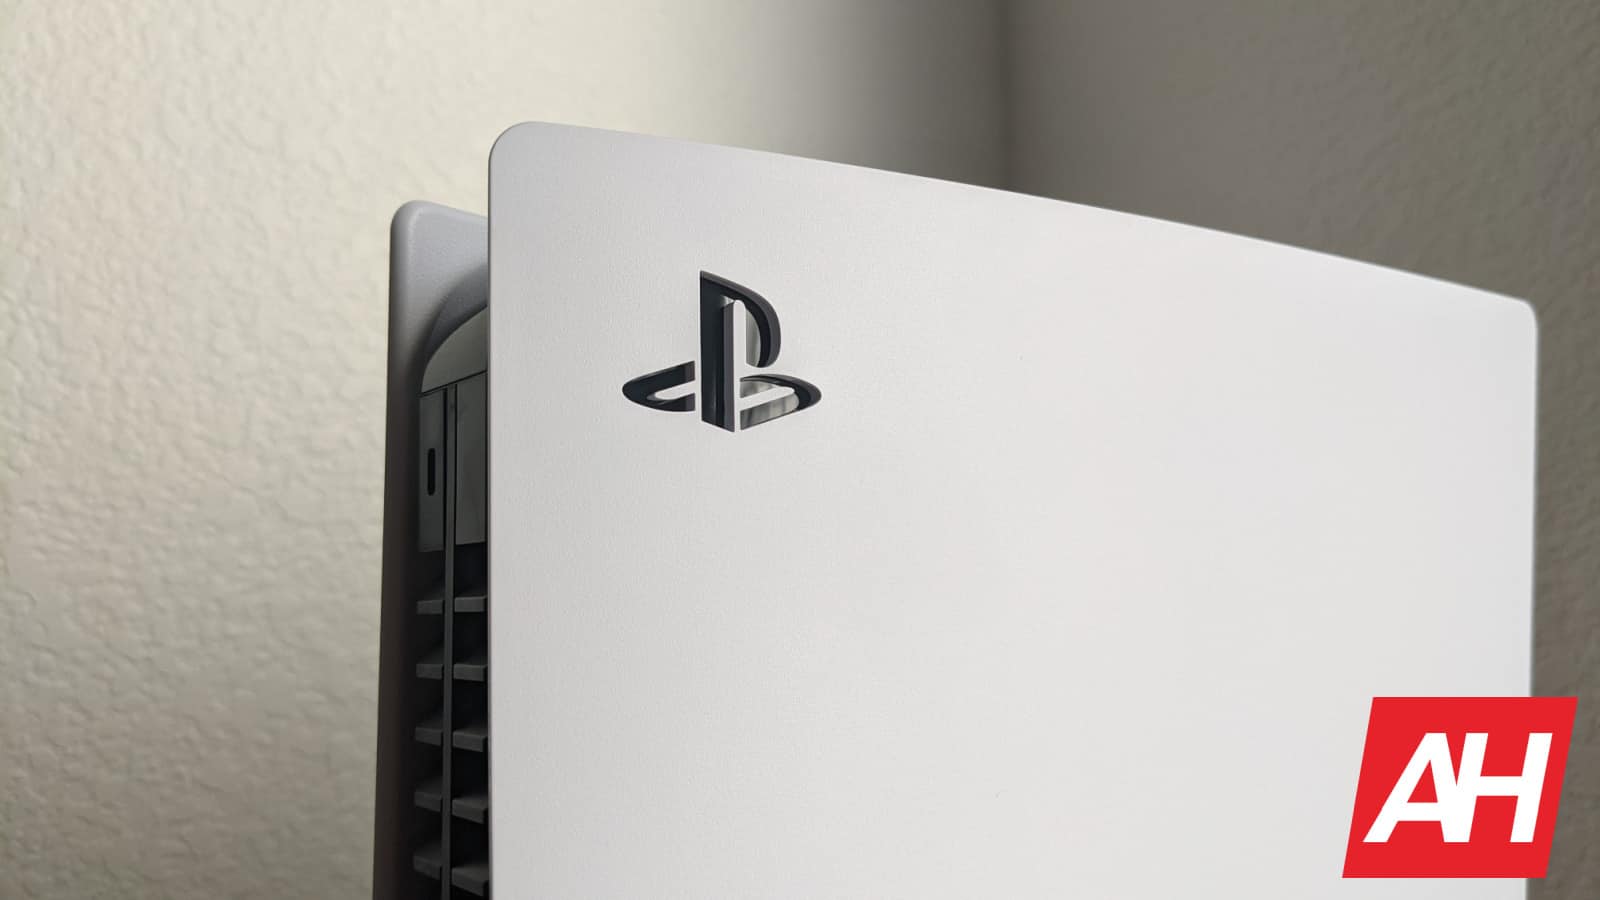 Se rumorea que el precio de la PlayStation 5 Pro de Sony ronda los 500 dólares